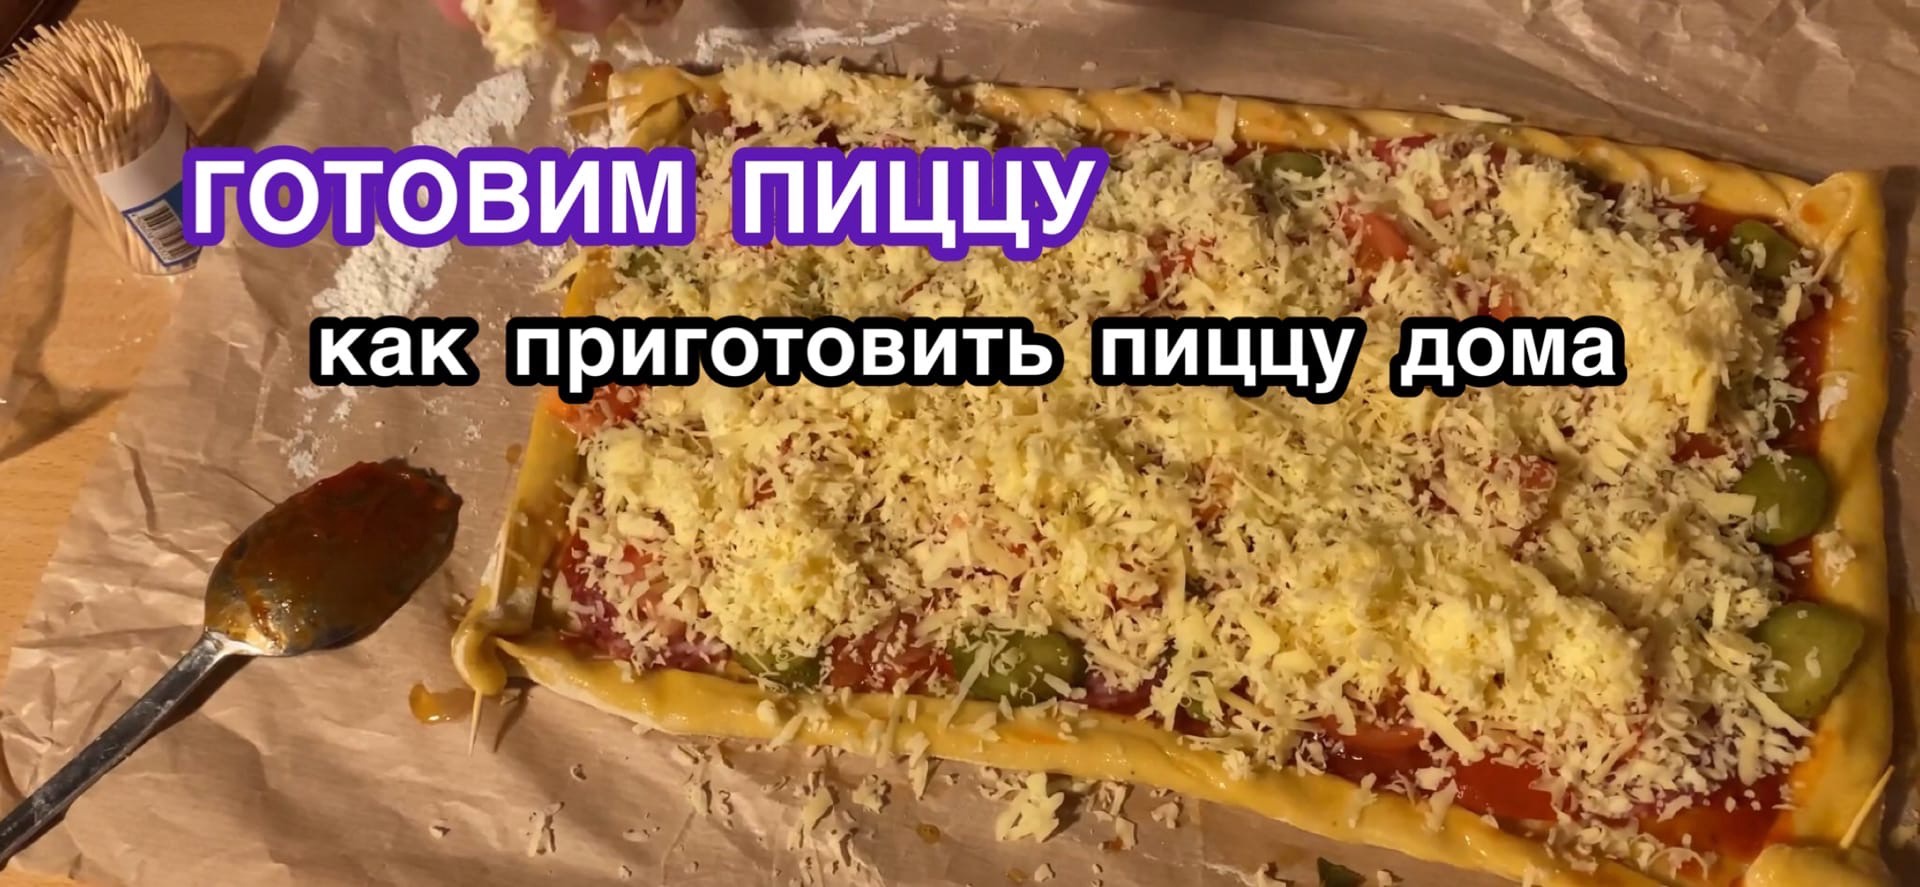 как приготовить пиццу описание действий русский язык фото 107